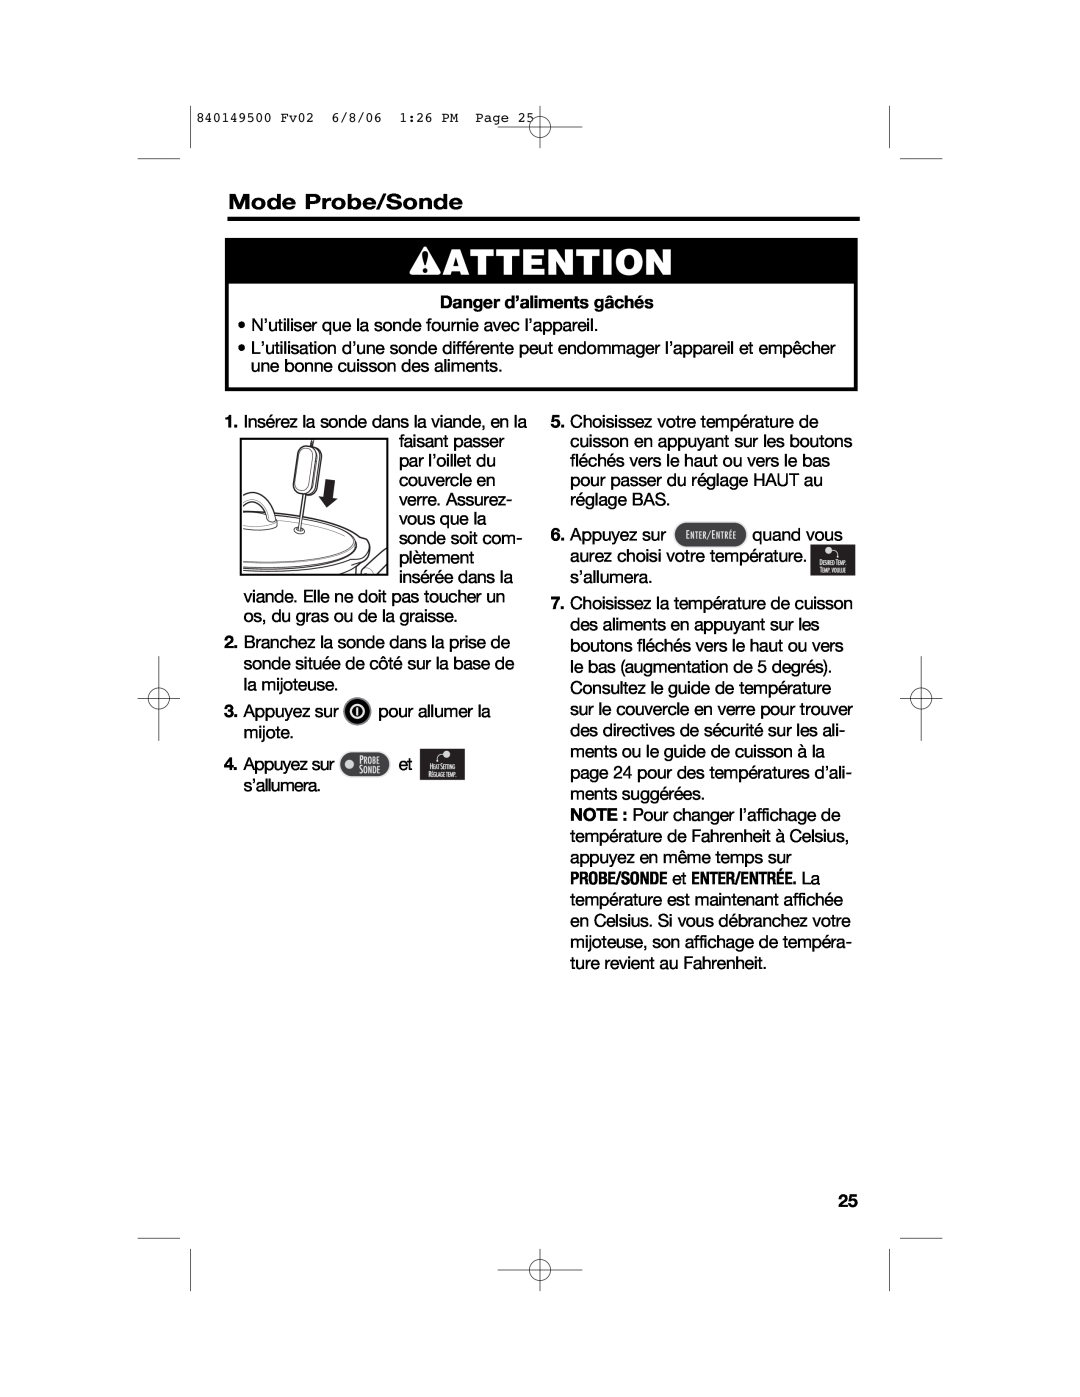 Proctor-Silex 840149500 manual wATTENTION, Mode Probe/Sonde, Danger d’aliments gâchés 